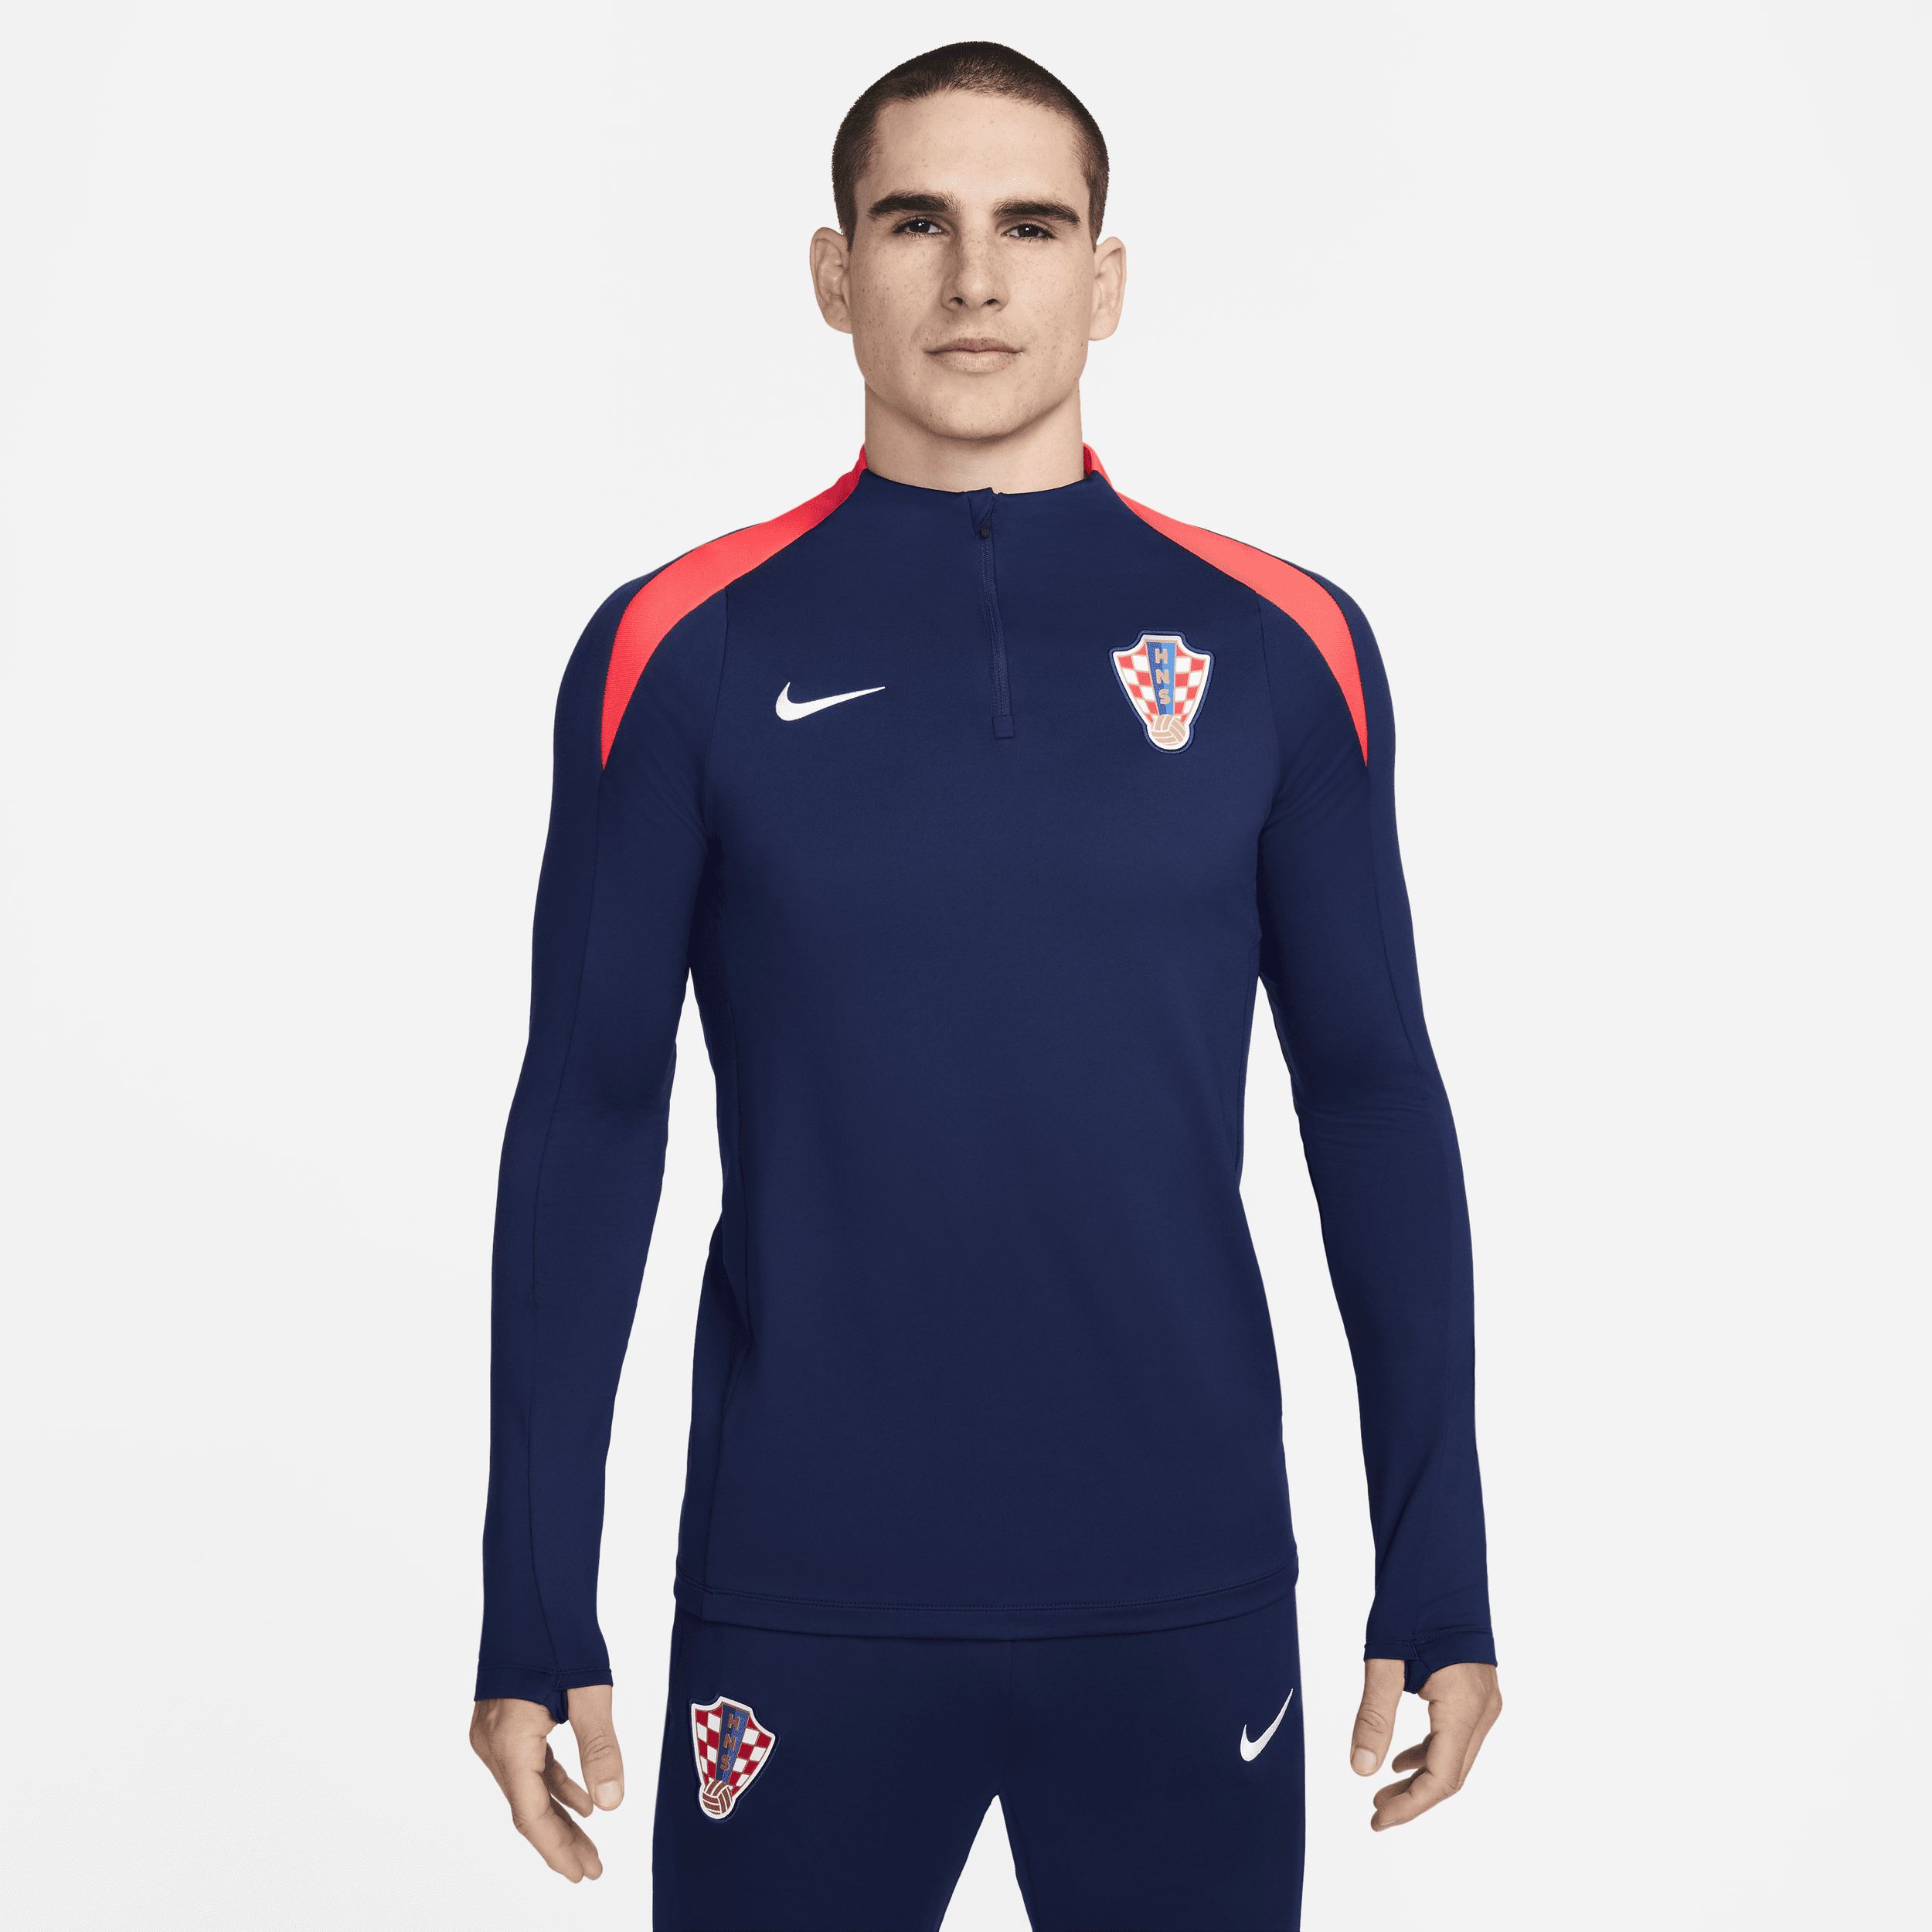 Maglia da calcio per allenamento Nike Dri-FIT Croazia Strike – Uomo - Blu